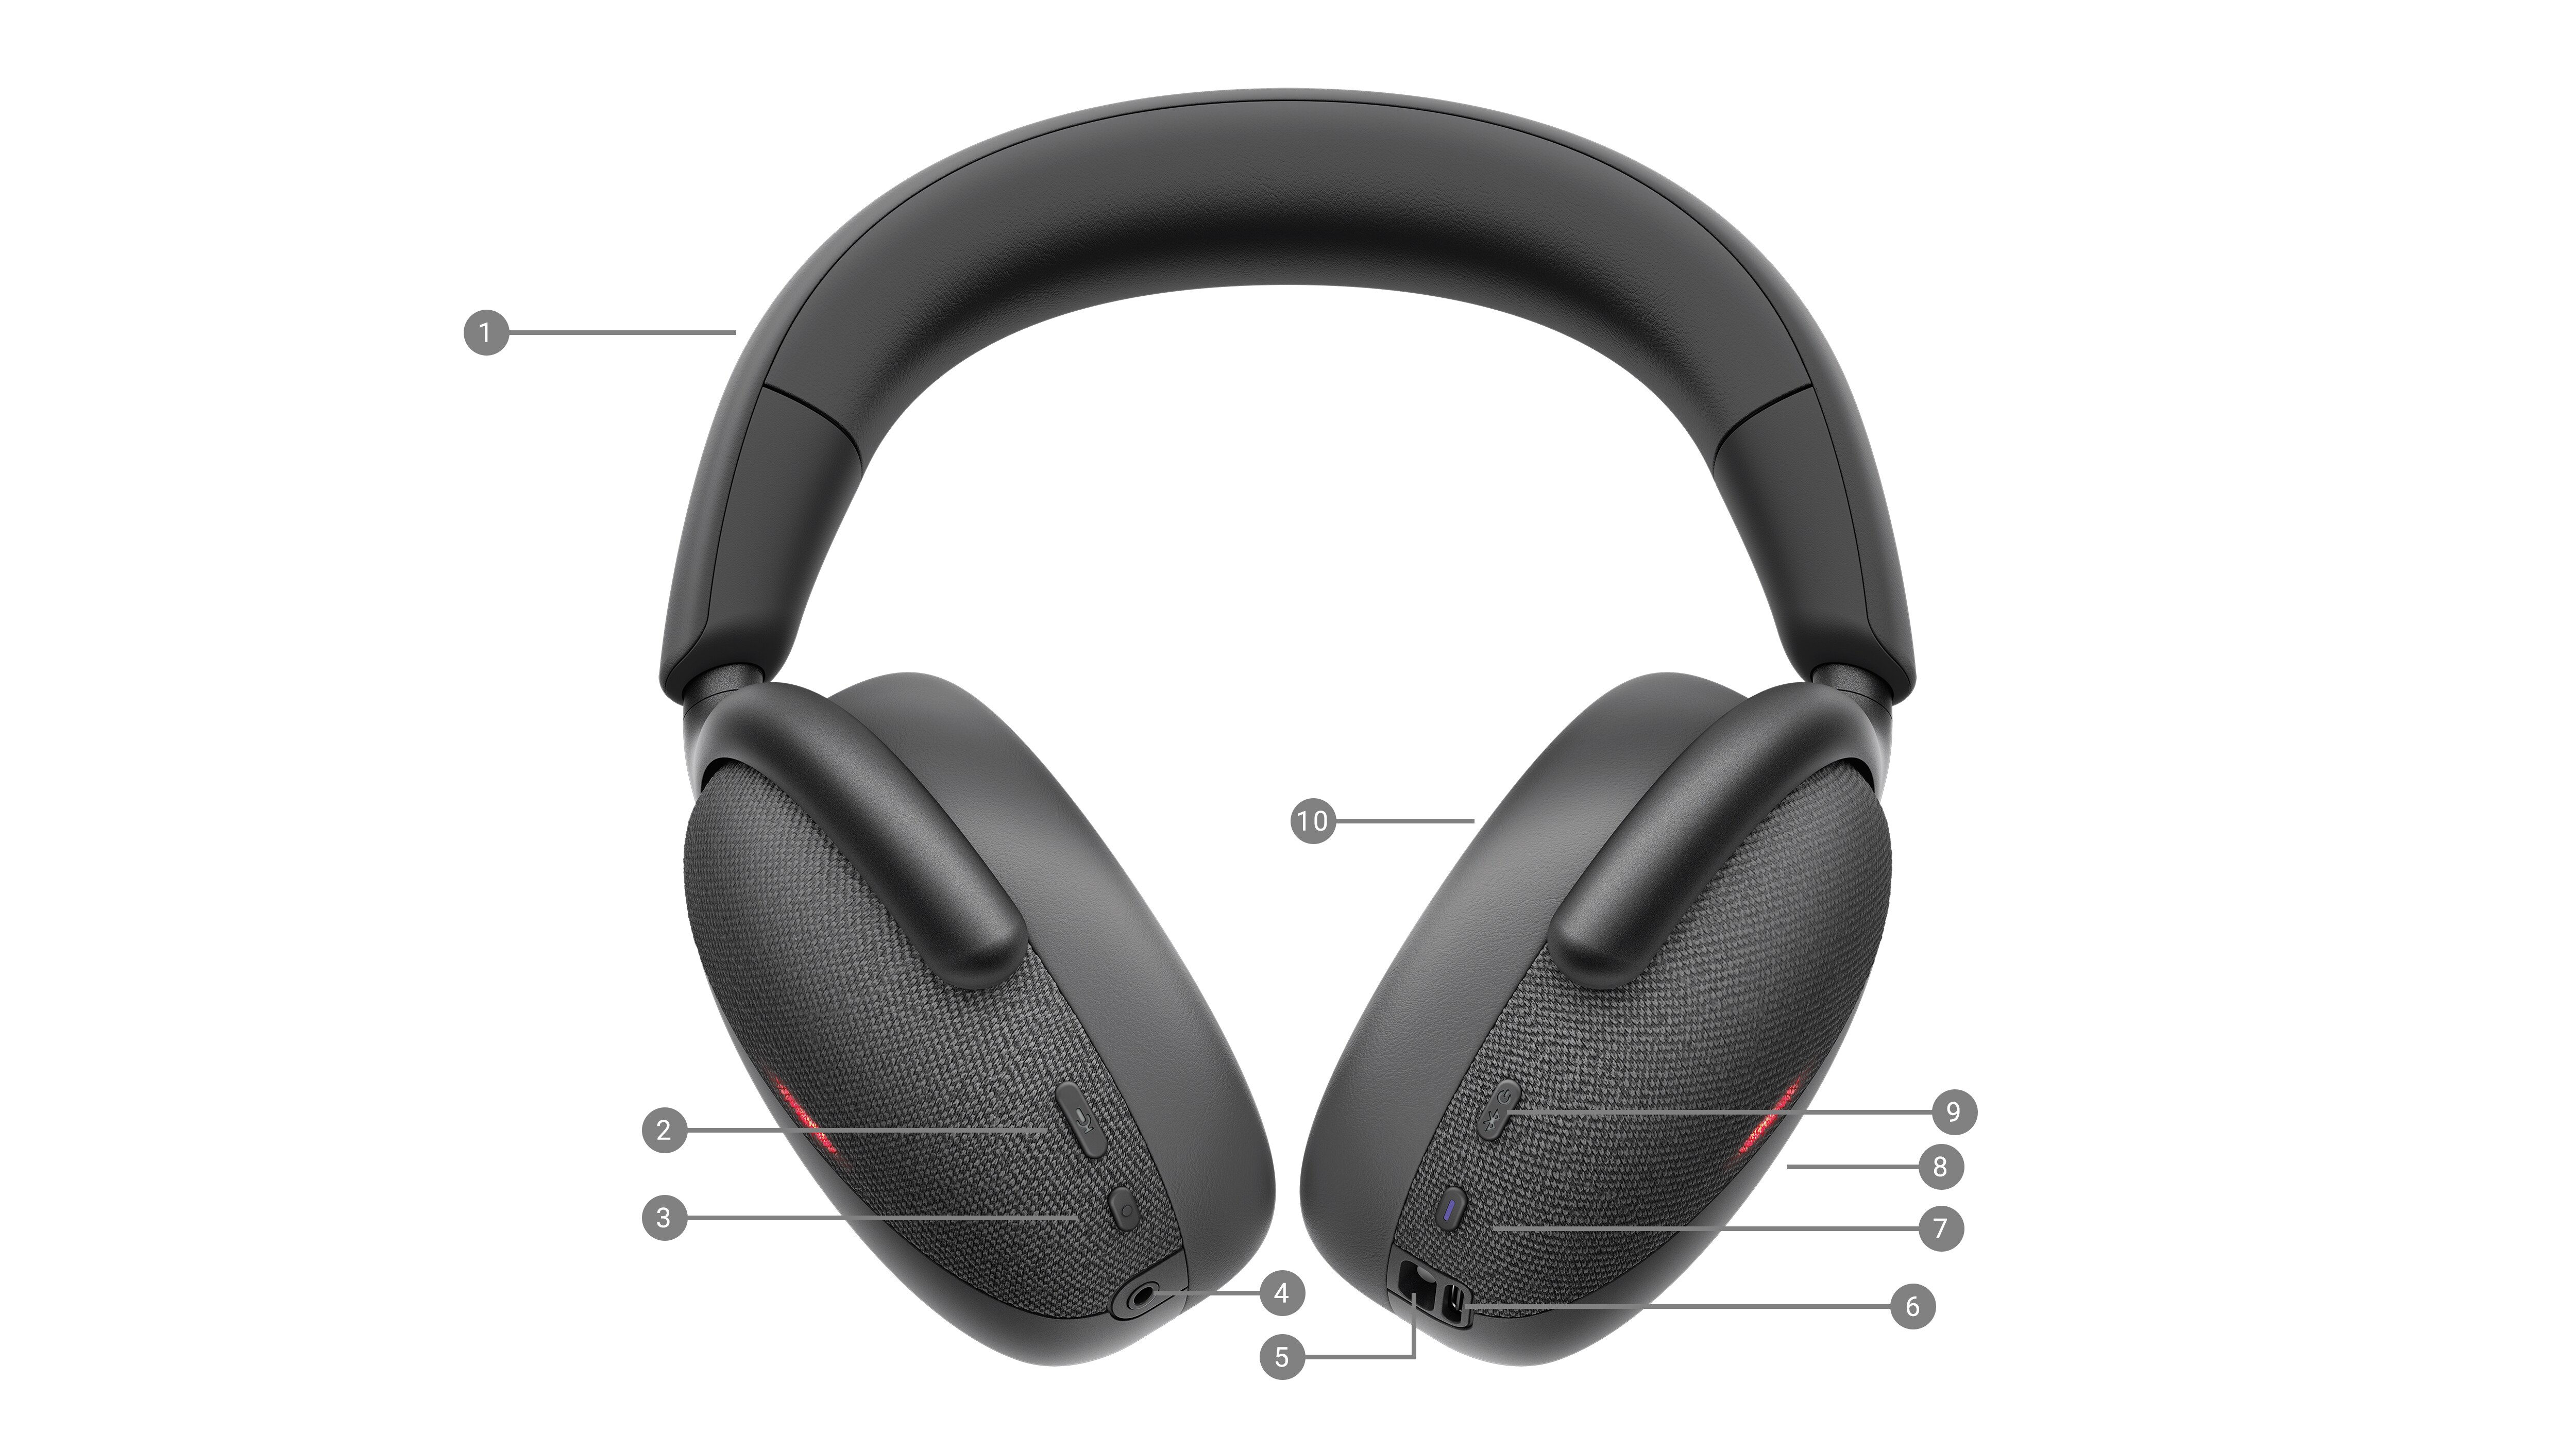 Dell Premier draadloze headset - productkenmerken